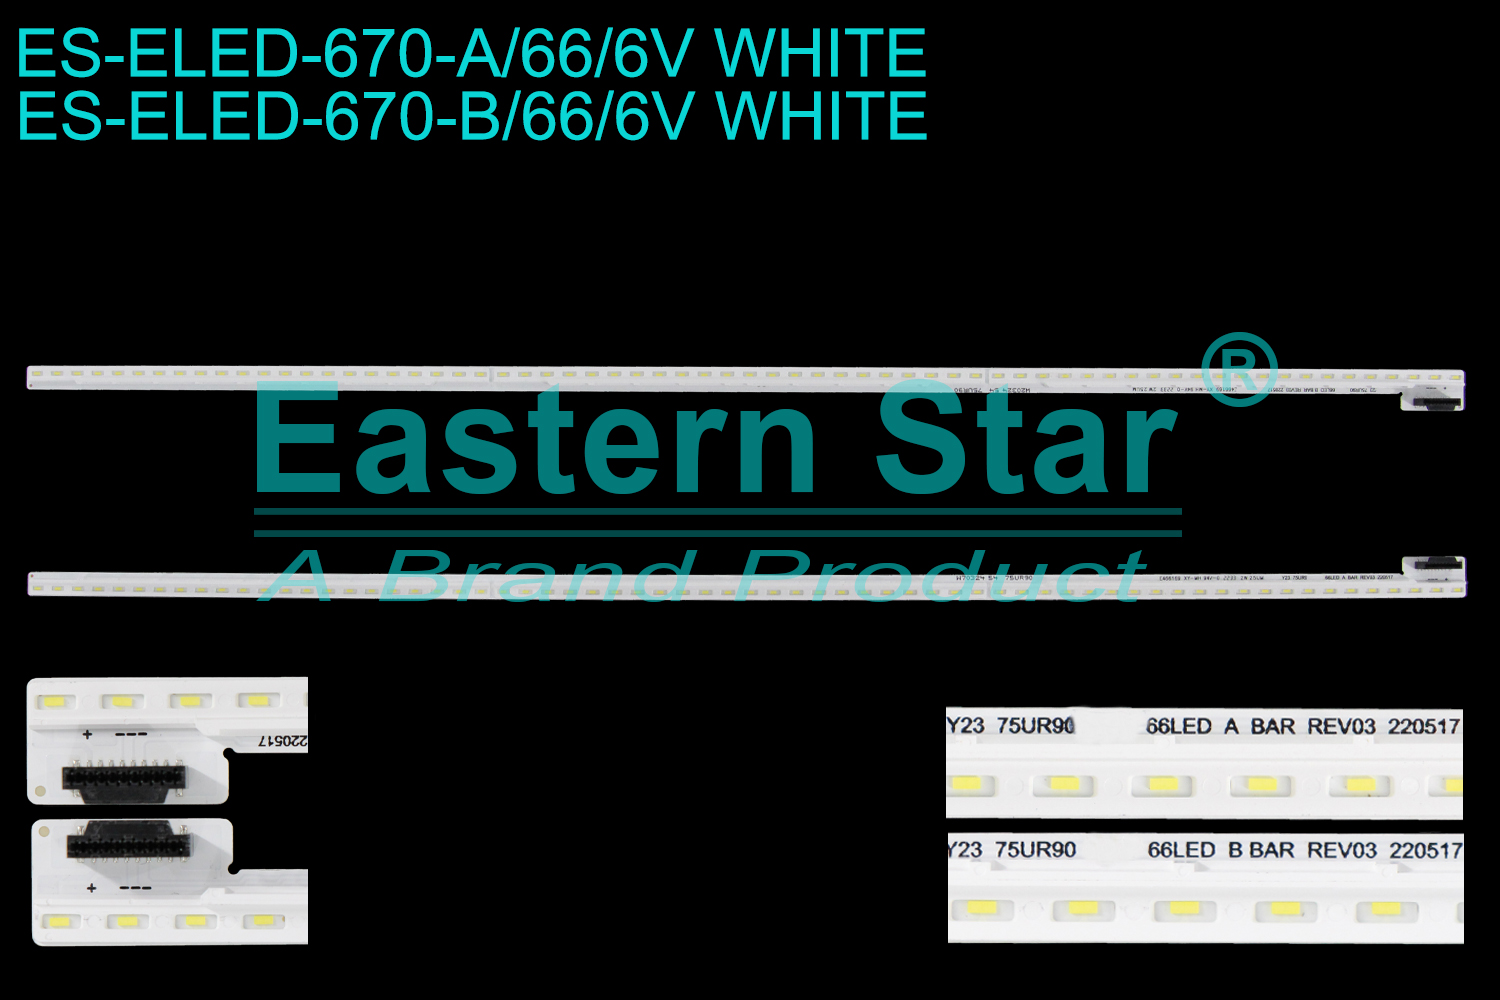 ES-ELED-670 ELED/EDGE TV backlight use for 75'' Lg A:Y23_75UR90_BOE_66LED_A BAR_REV03 220517 2233 2W 25UM W70324 54 75UR90  B:Y23_75UR90_BOE_66LED_B BAR_REV03_220517 2233 2W 25UM W20324 54 75UR90 LED STRIPS(/)